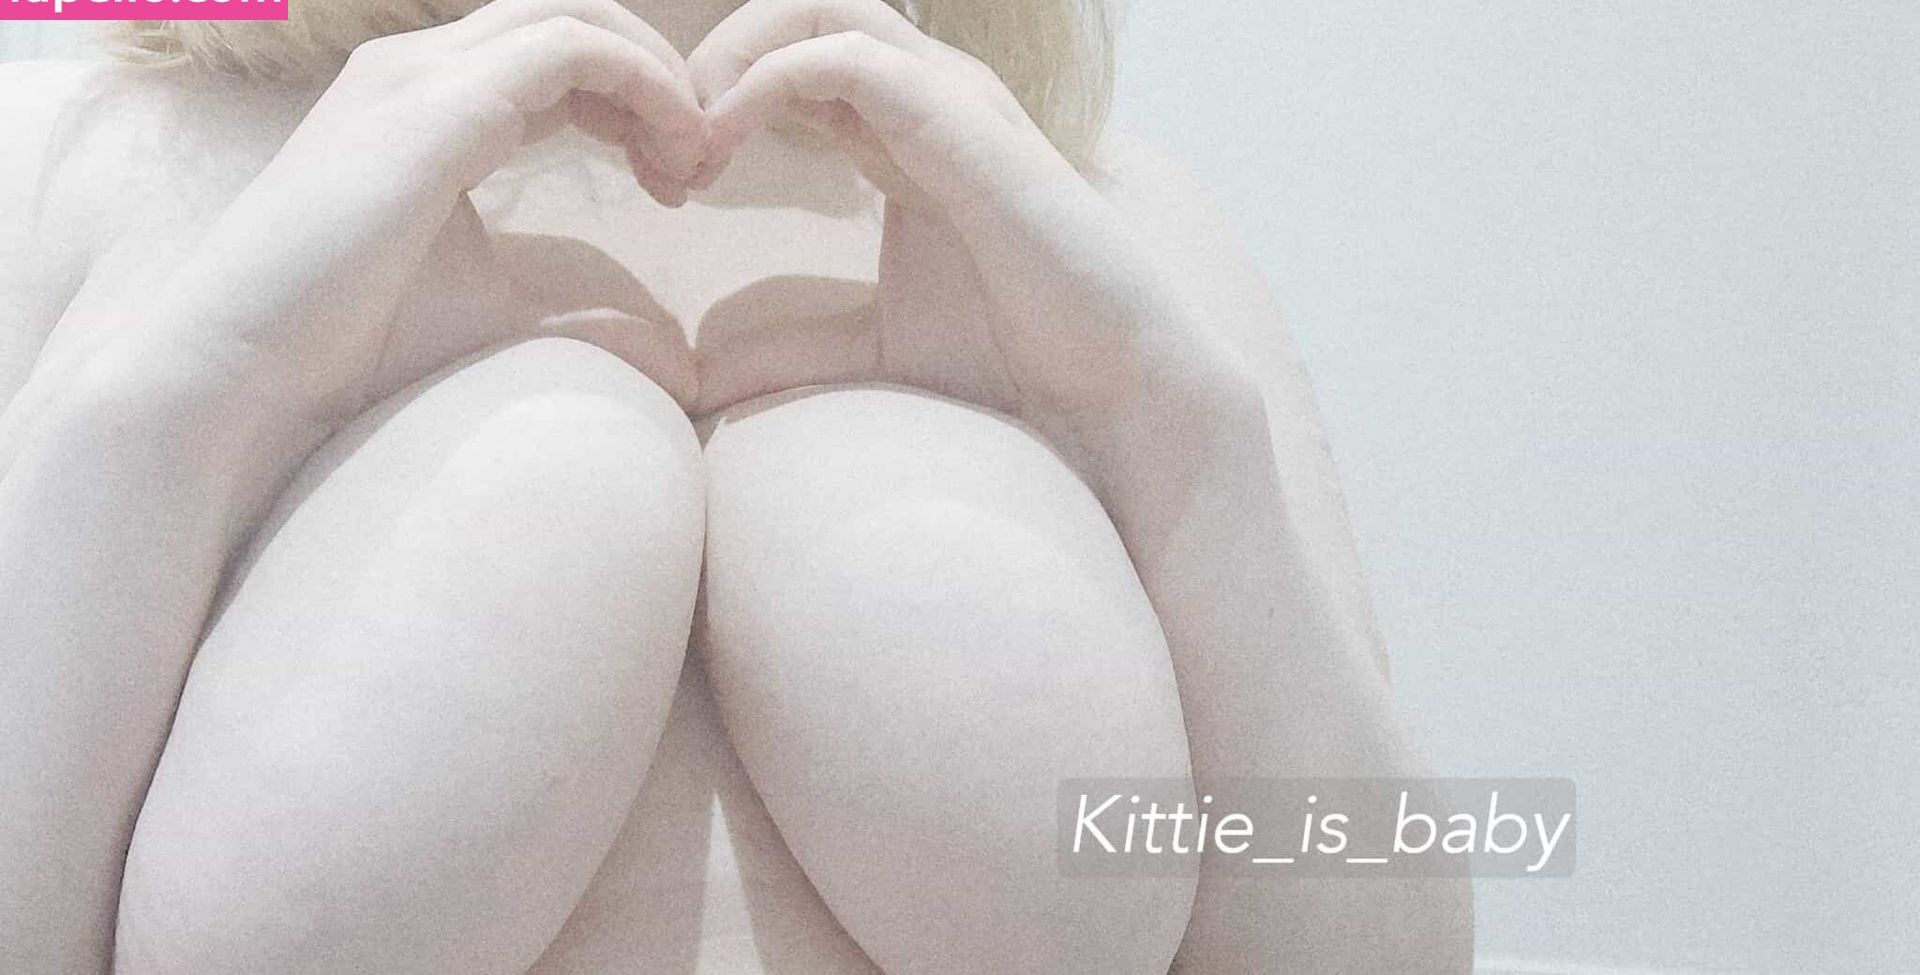 Kittie_is_baby nude #108095759